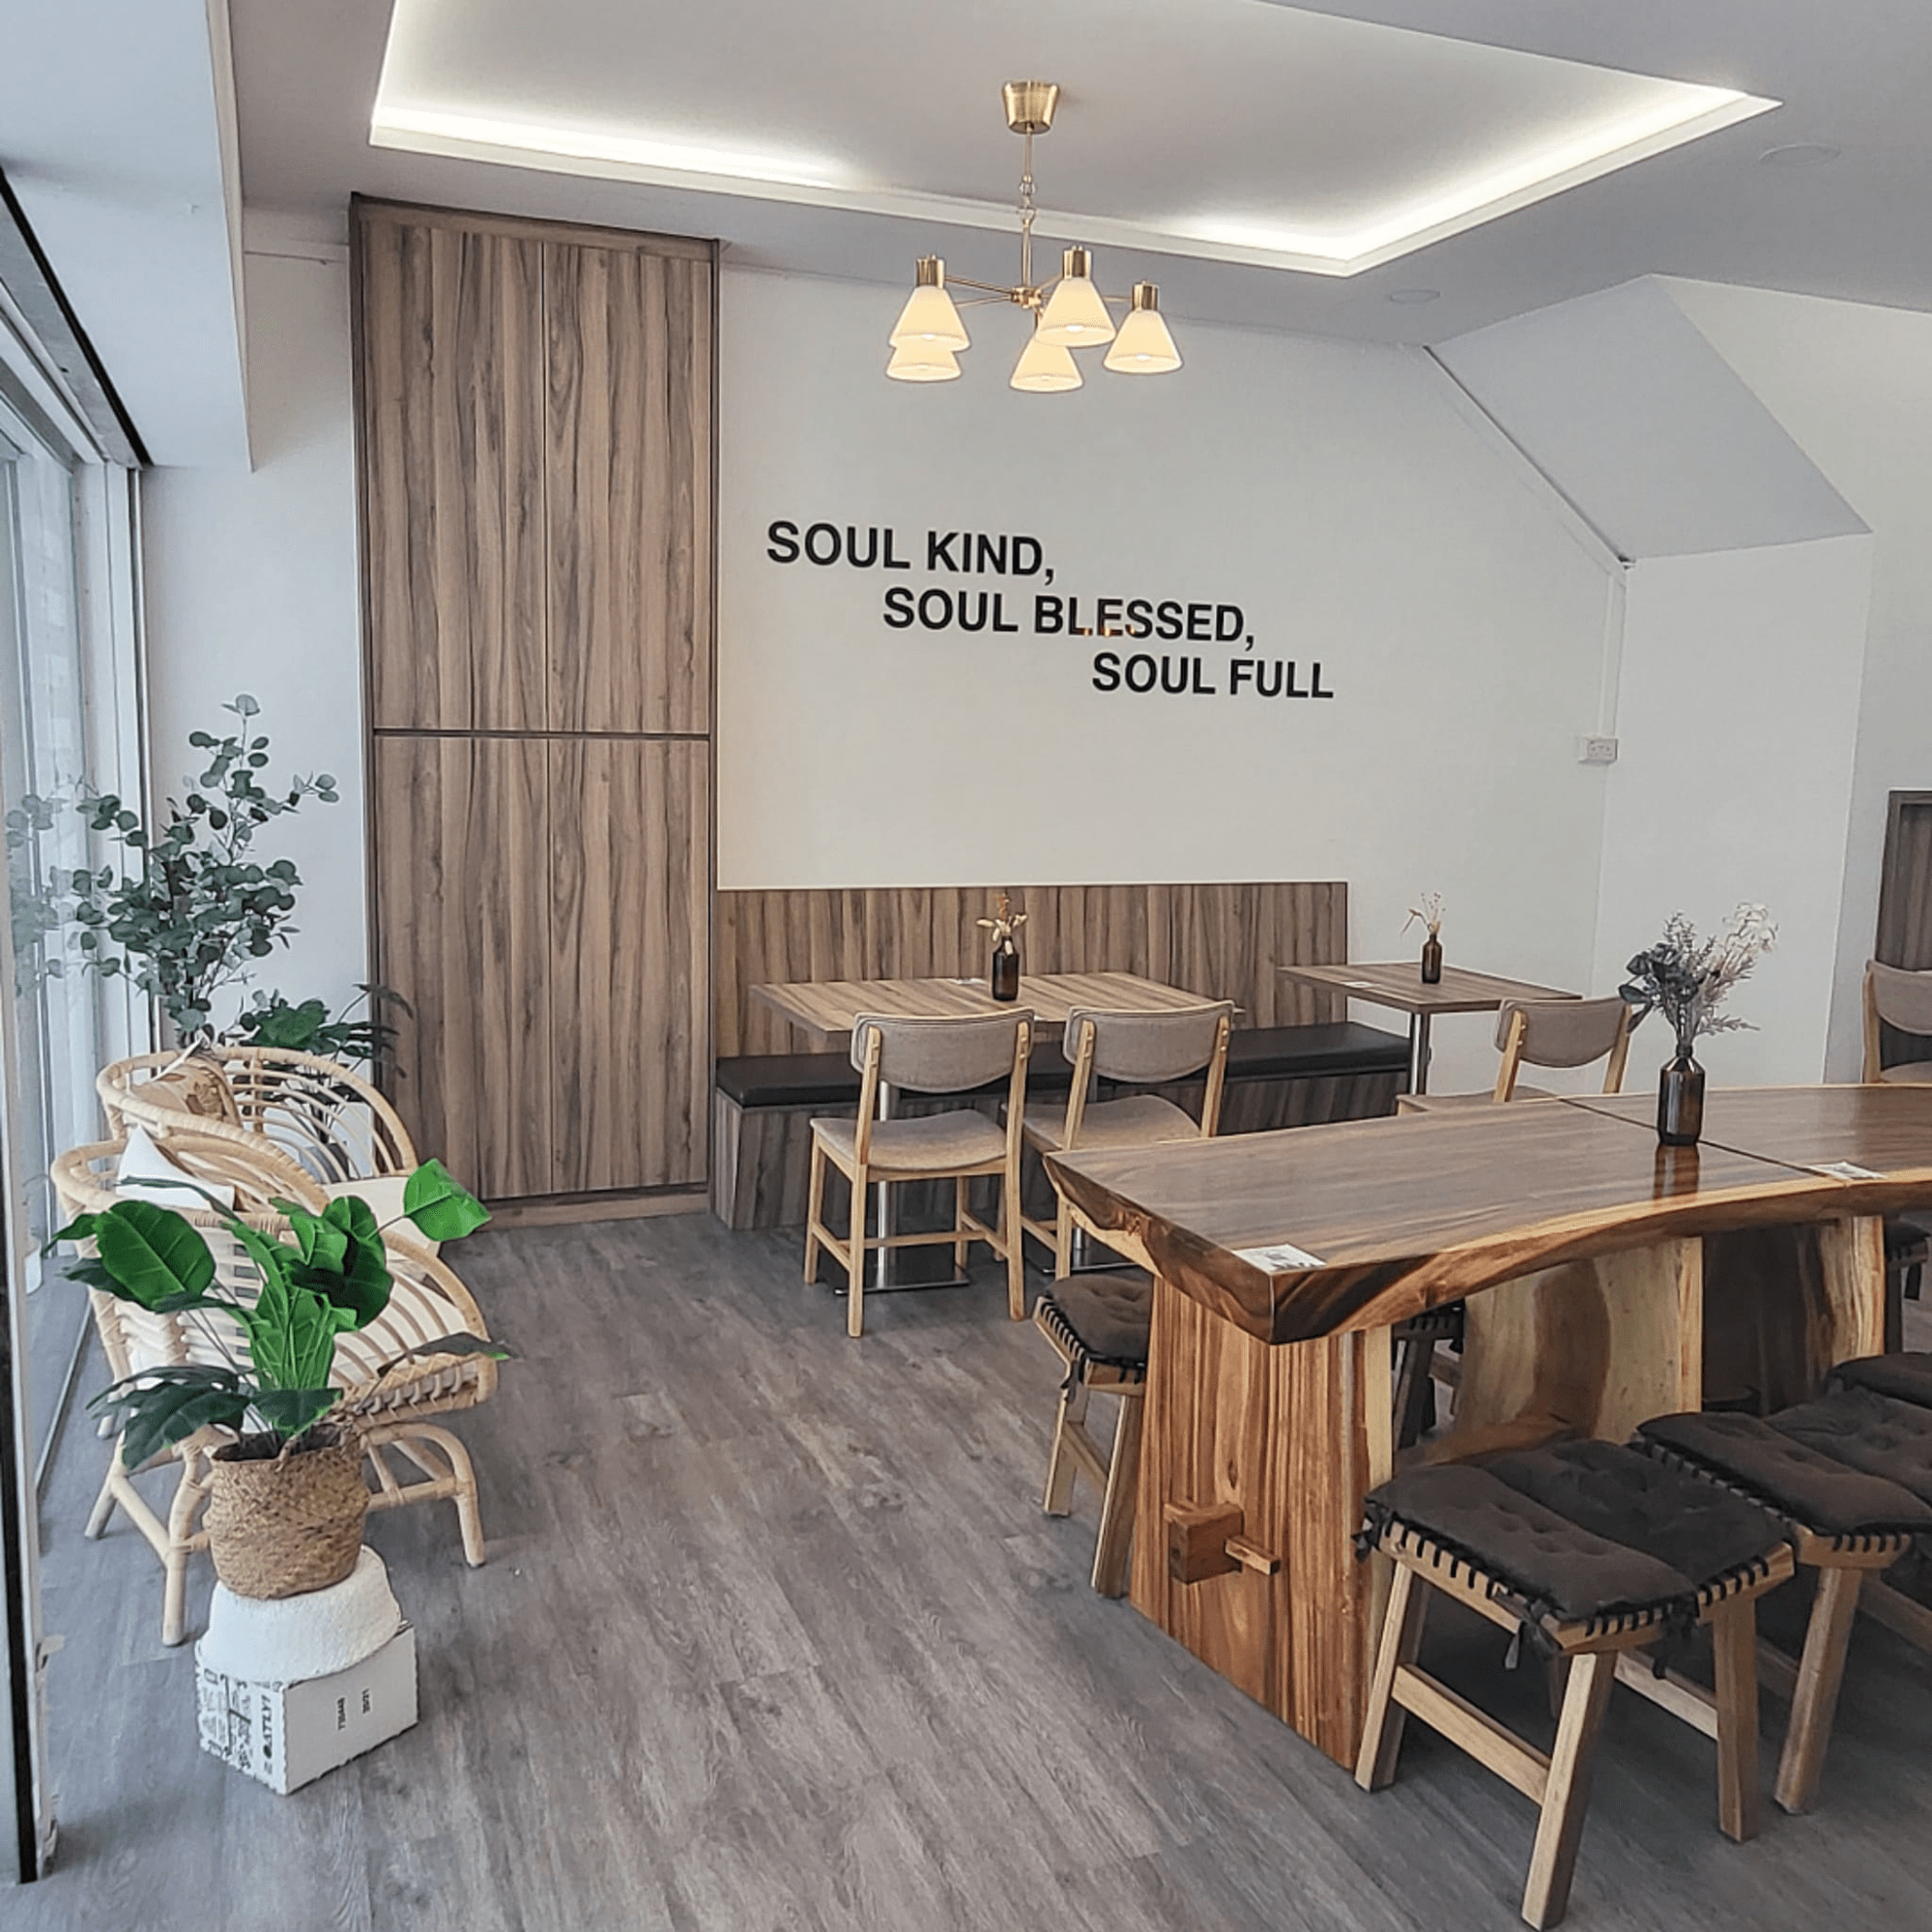 Soul Kind Cafe interior